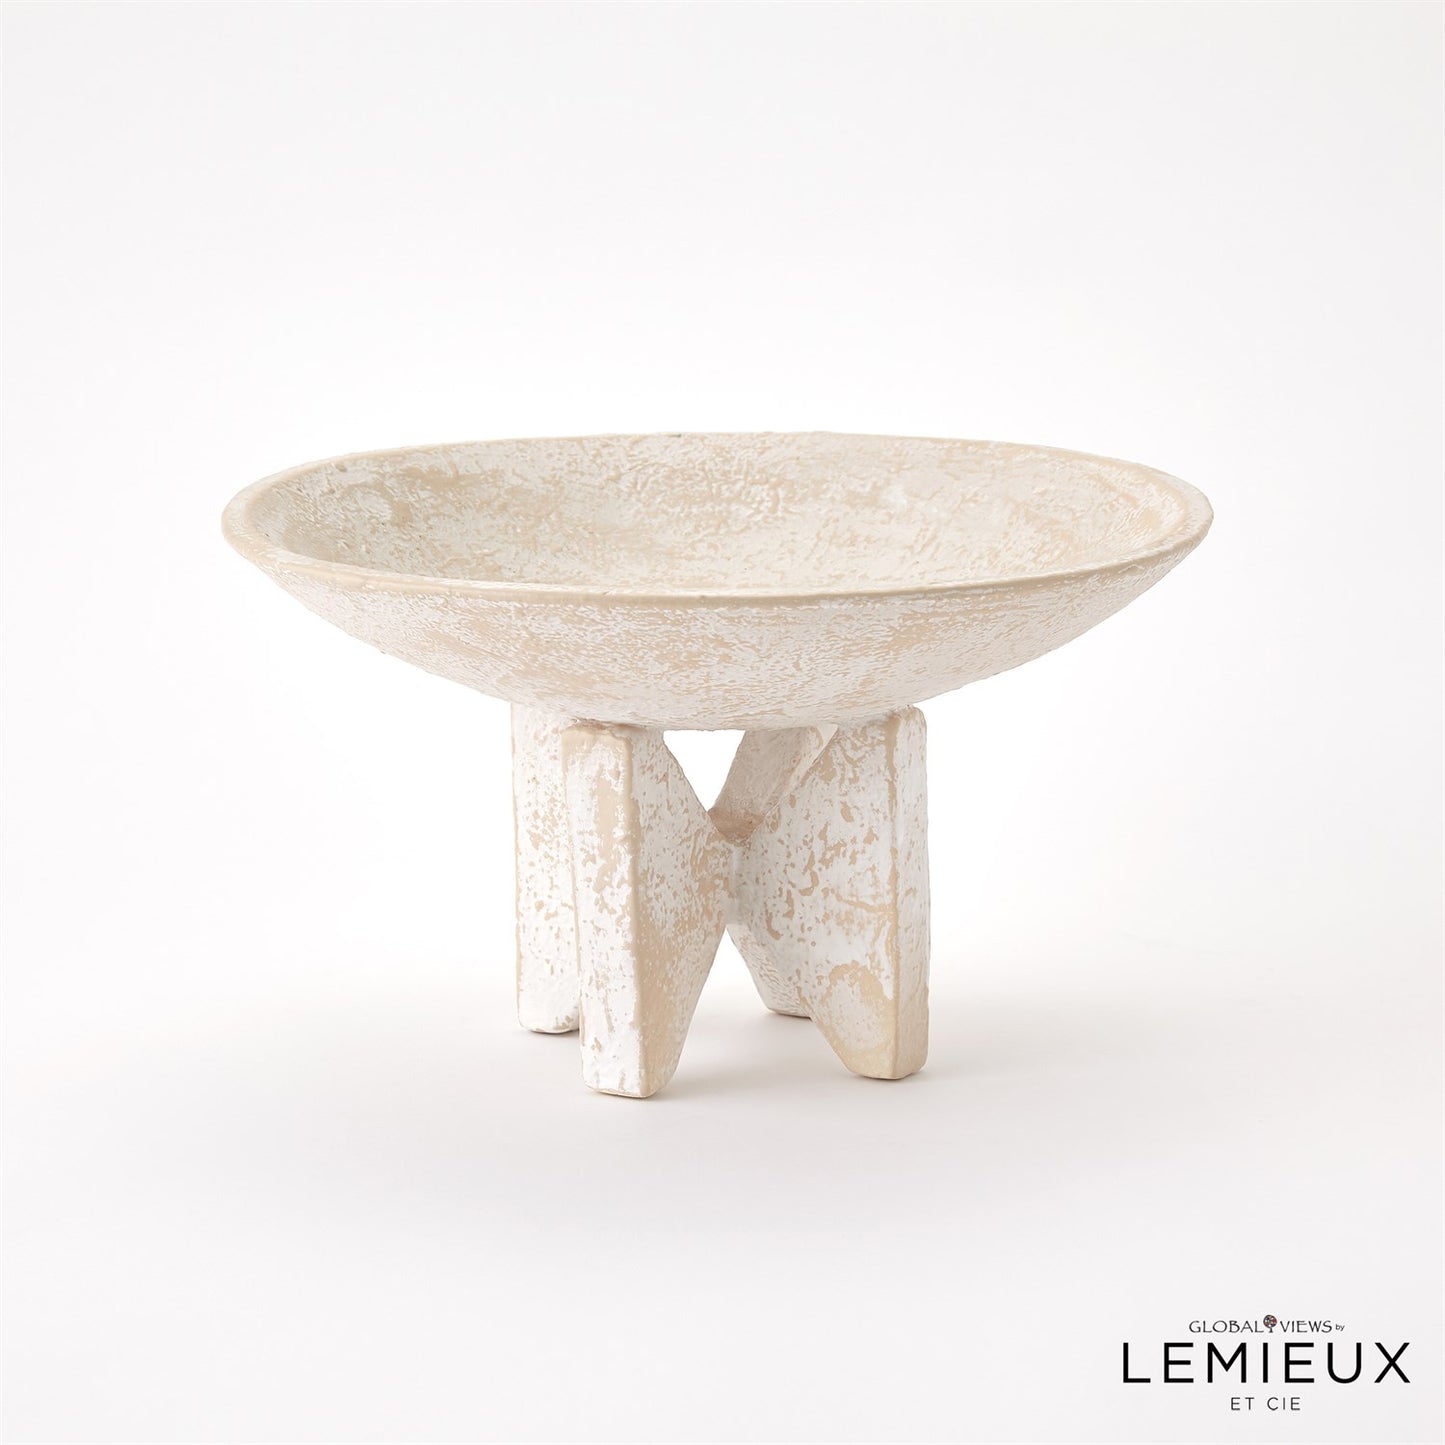 Lemieux Et Cie Loire Bowl Collection - Natural